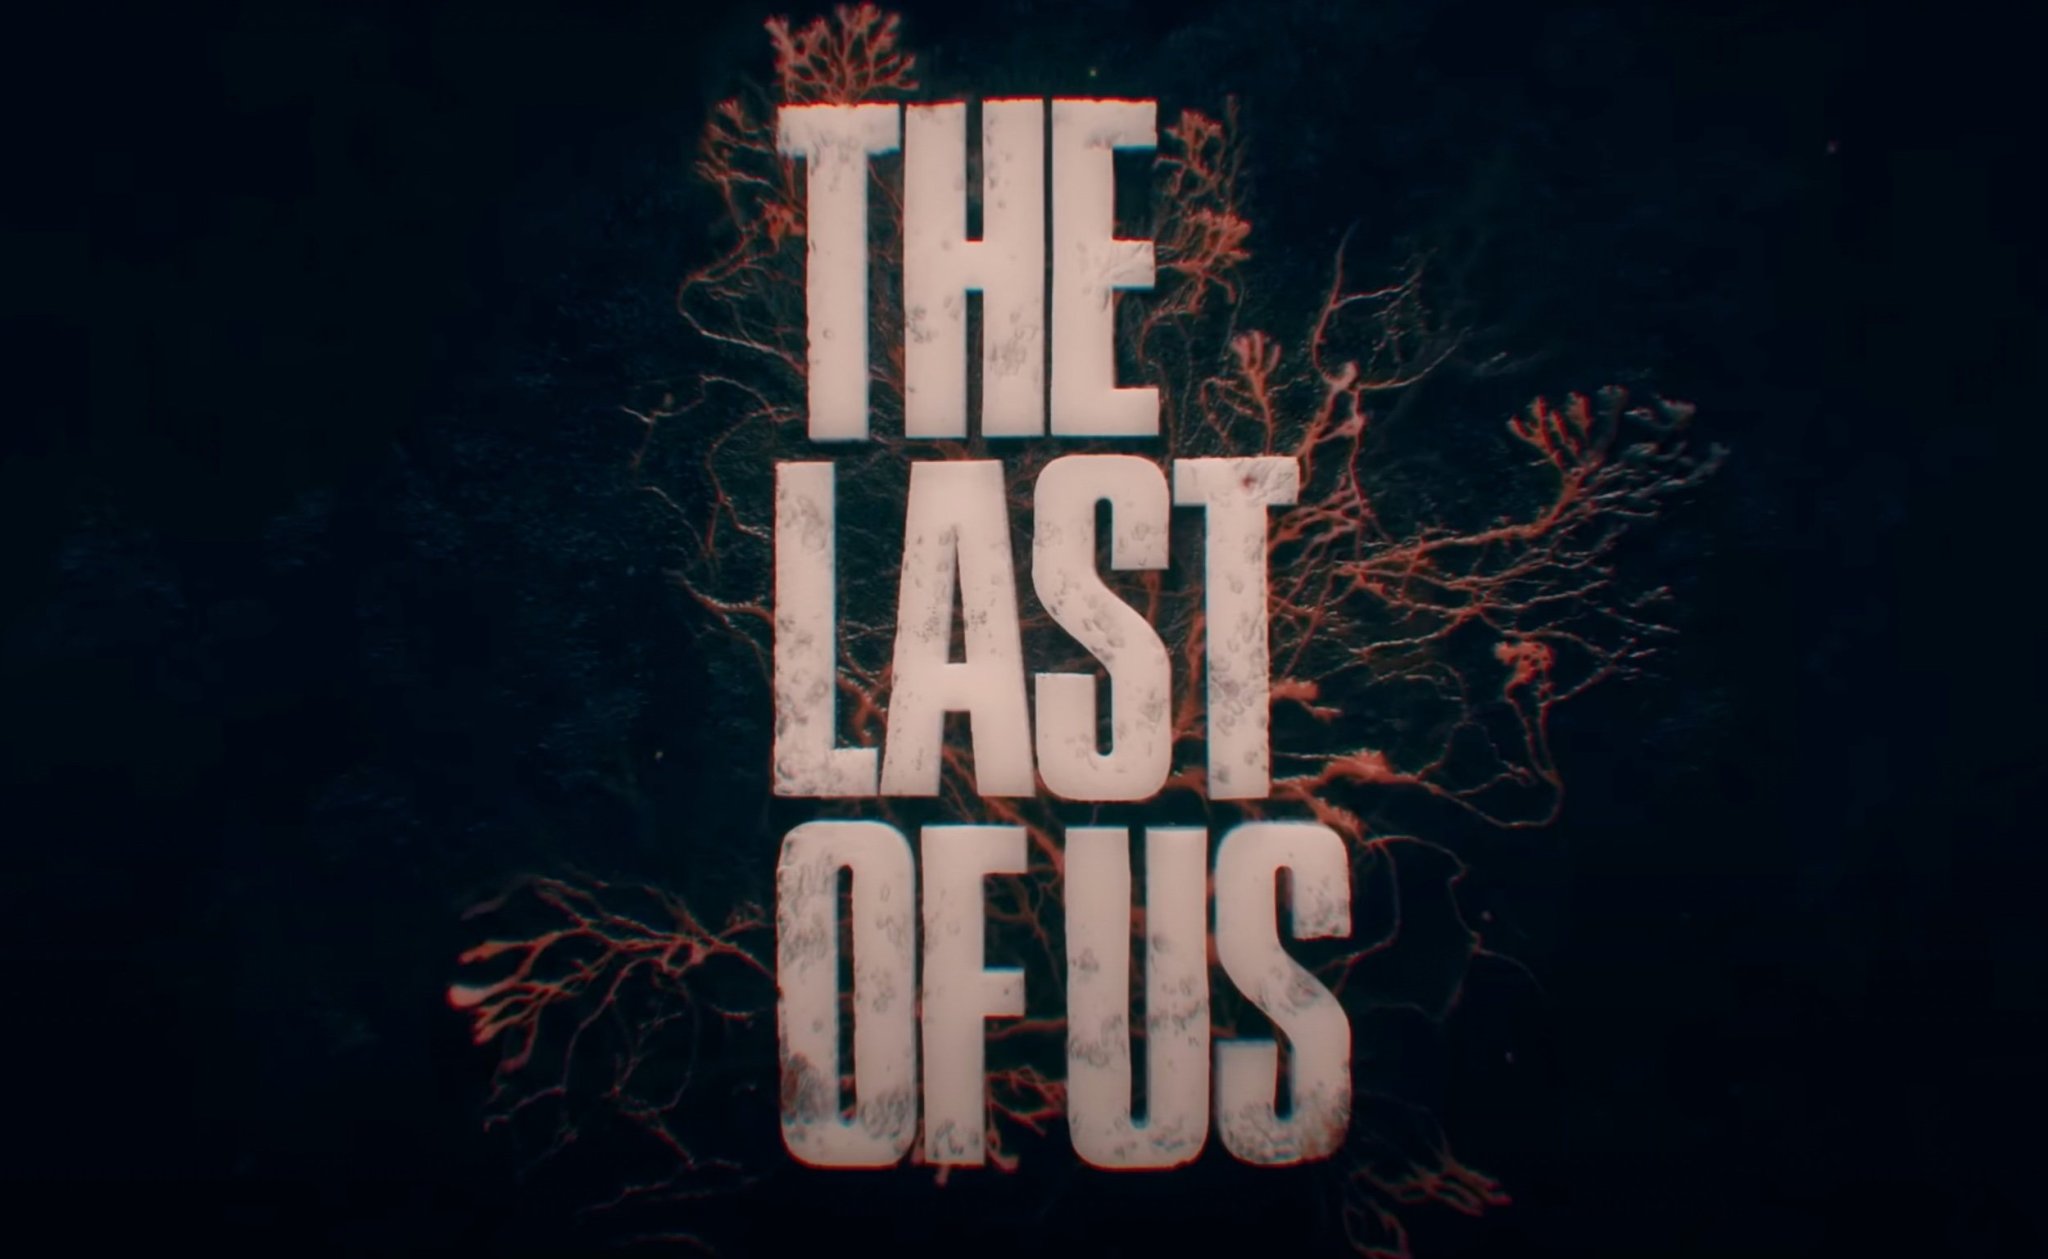 El próximo capítulo de 'The Last of Us' va a dejarte sin aliento, según uno de sus actores